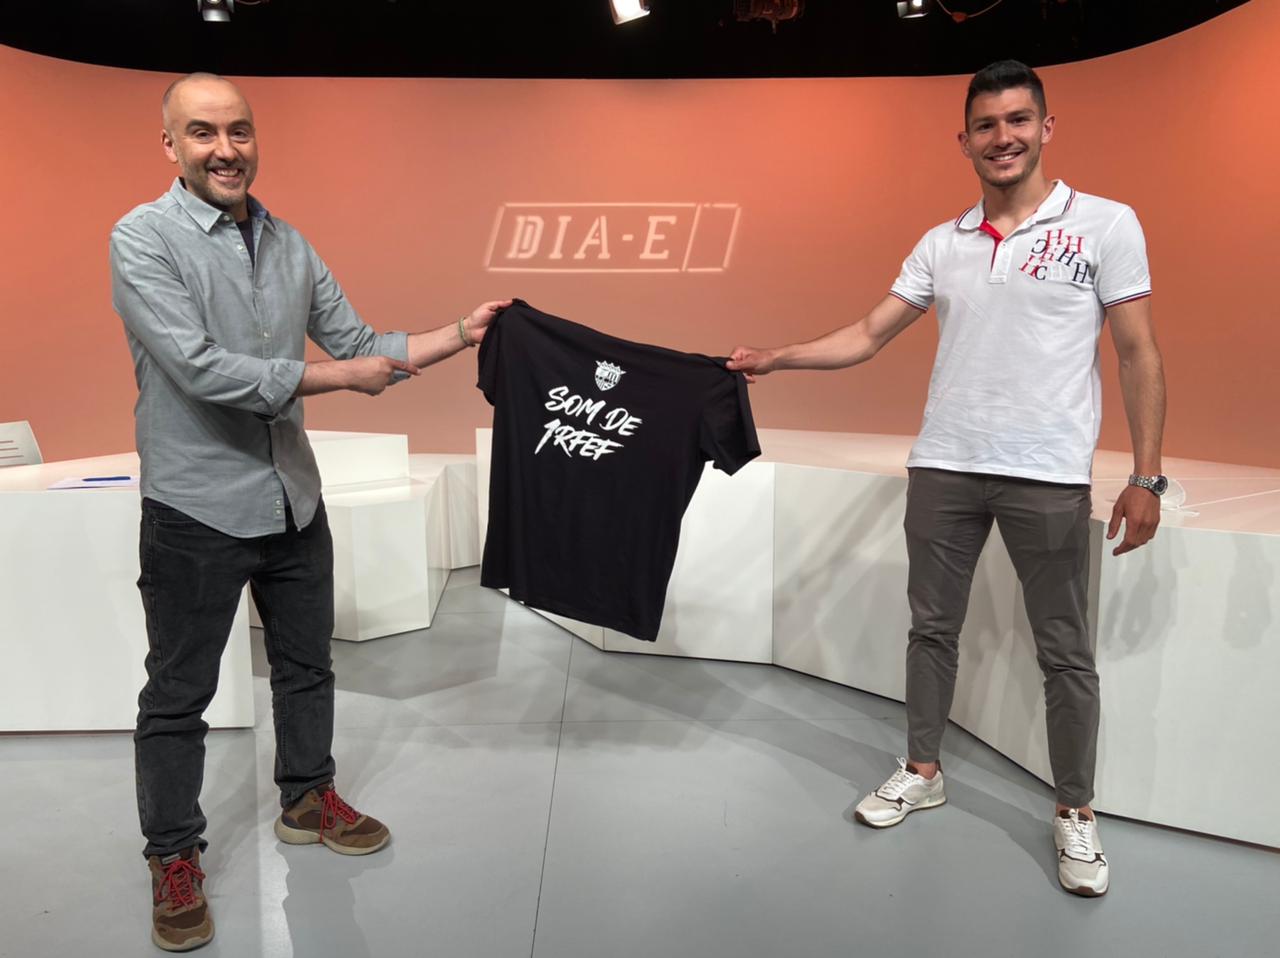 Dia E 1a part - Miguel Loureiro ascendeix amb el FC Andorra a Primera RFEF